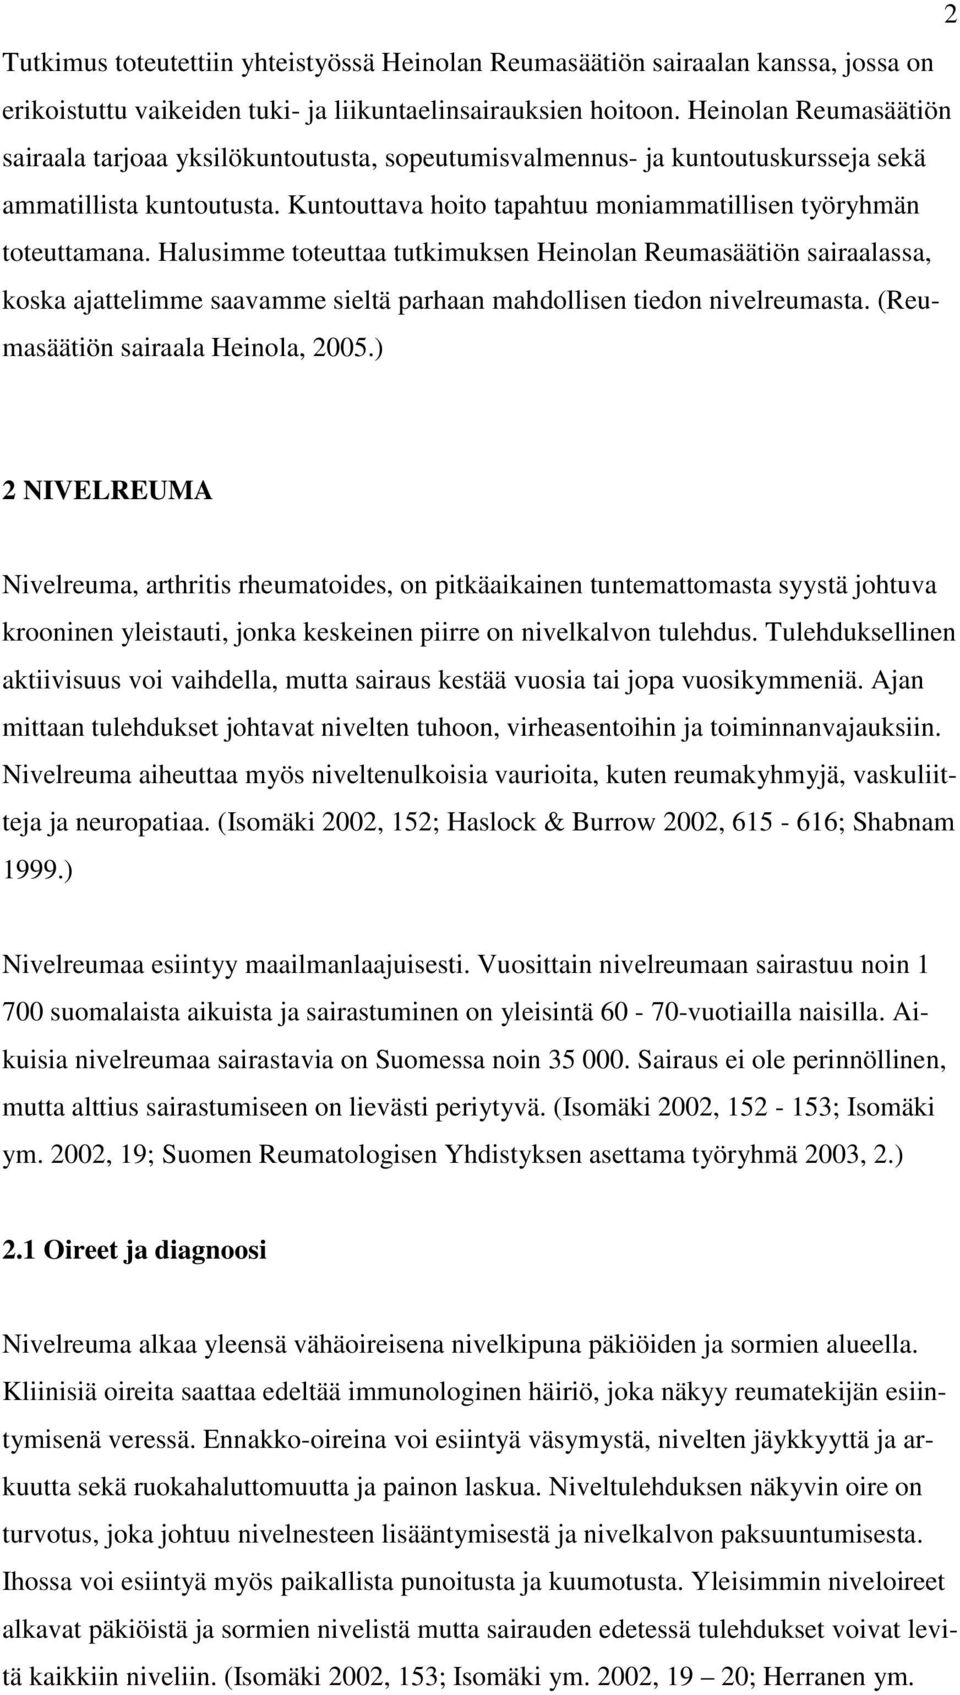 Halusimme toteuttaa tutkimuksen Heinolan Reumasäätiön sairaalassa, koska ajattelimme saavamme sieltä parhaan mahdollisen tiedon nivelreumasta. (Reumasäätiön sairaala Heinola, 2005.